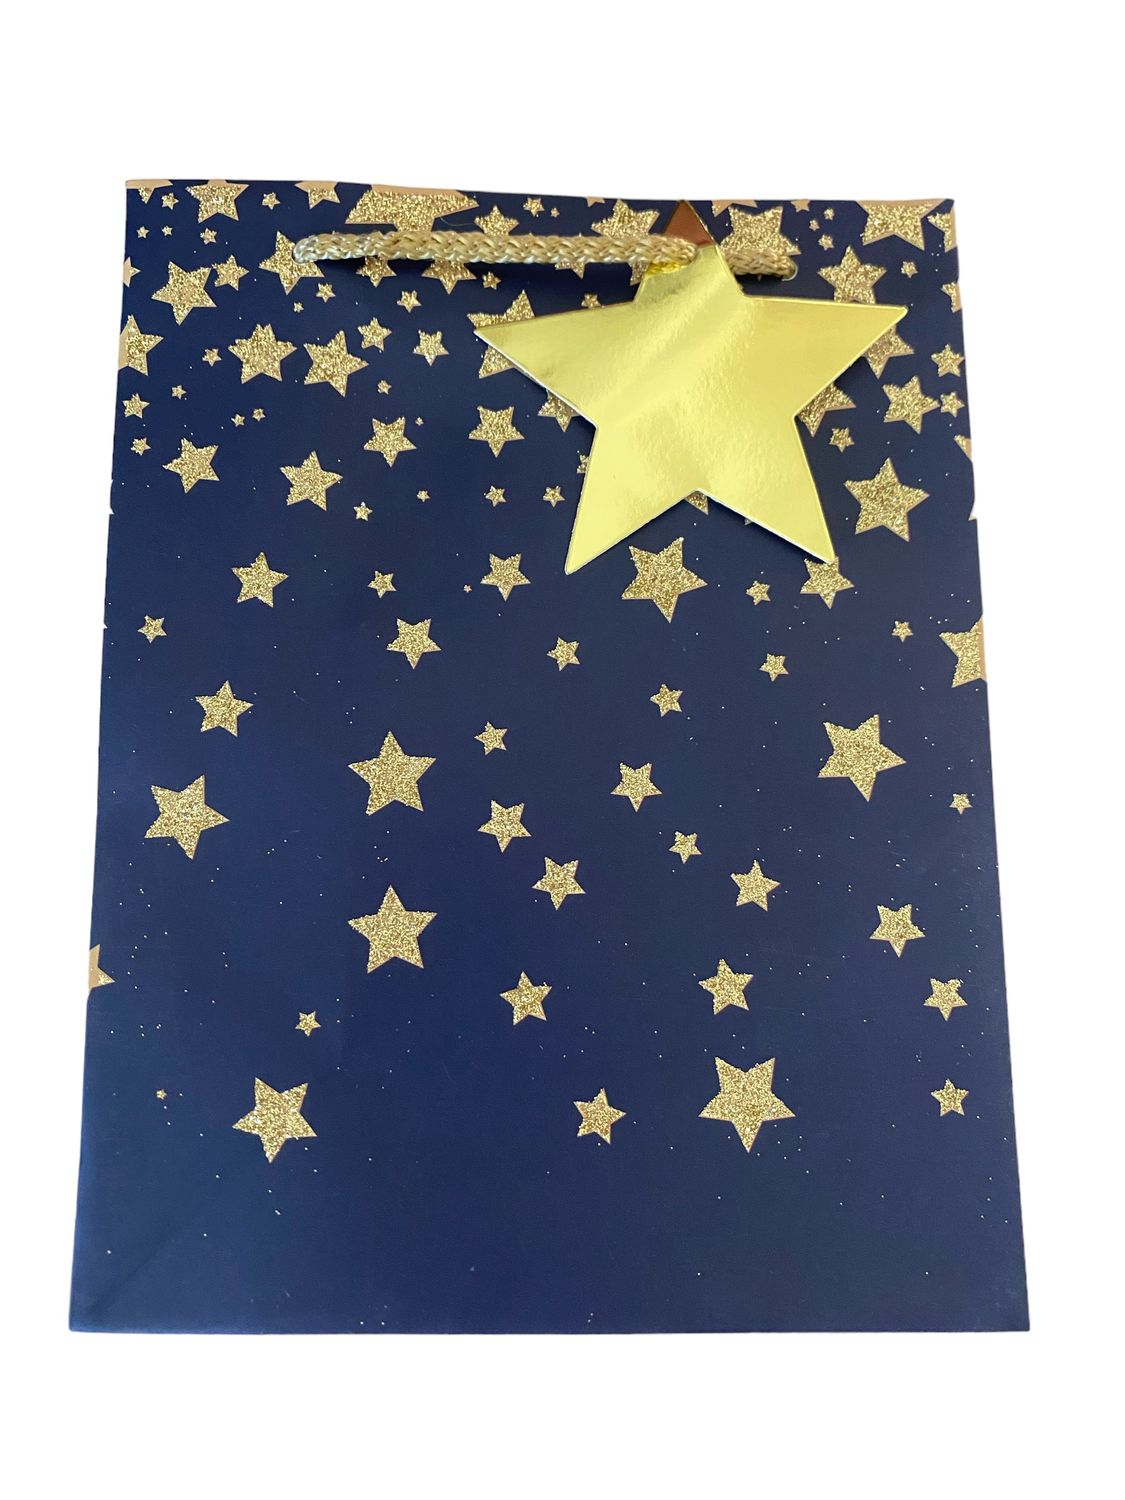 Falling Gold Glitter Stars Navy Blue Small Gift Bag PK3 (R15 Each)